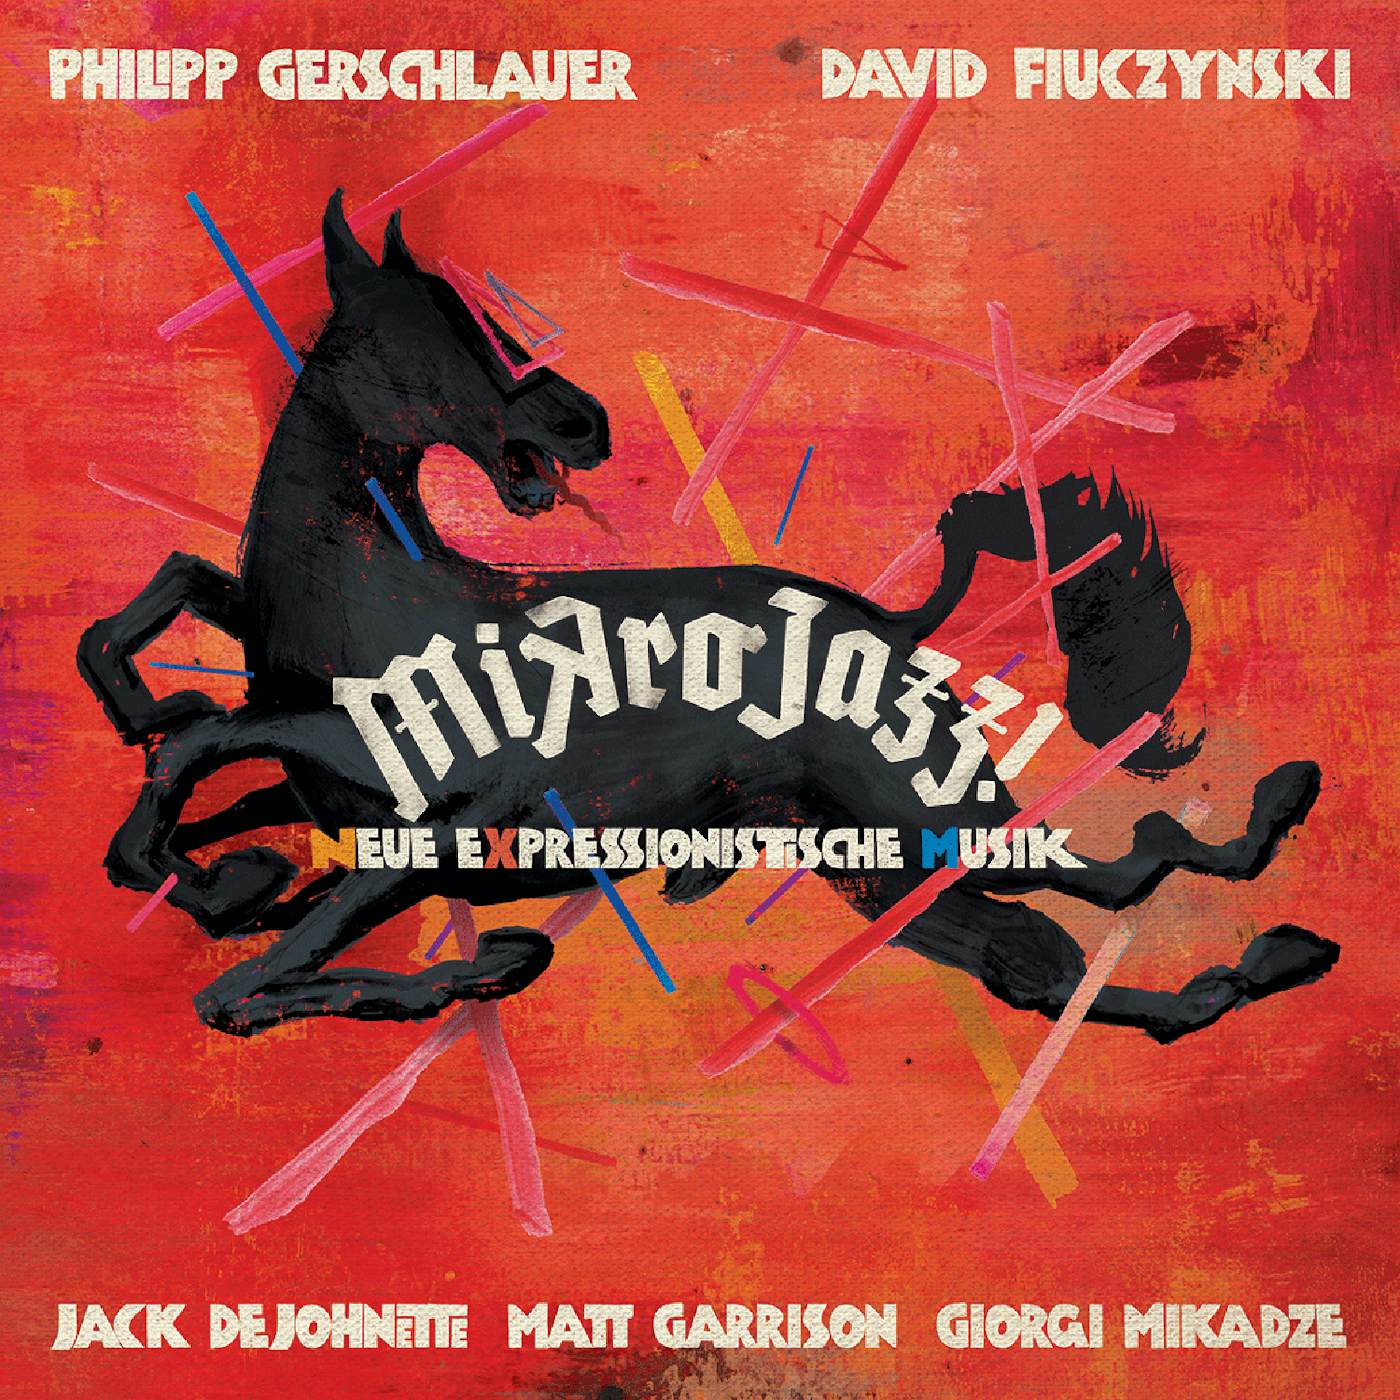 Gerschlauer MIKROJAZZ Vinyl Record